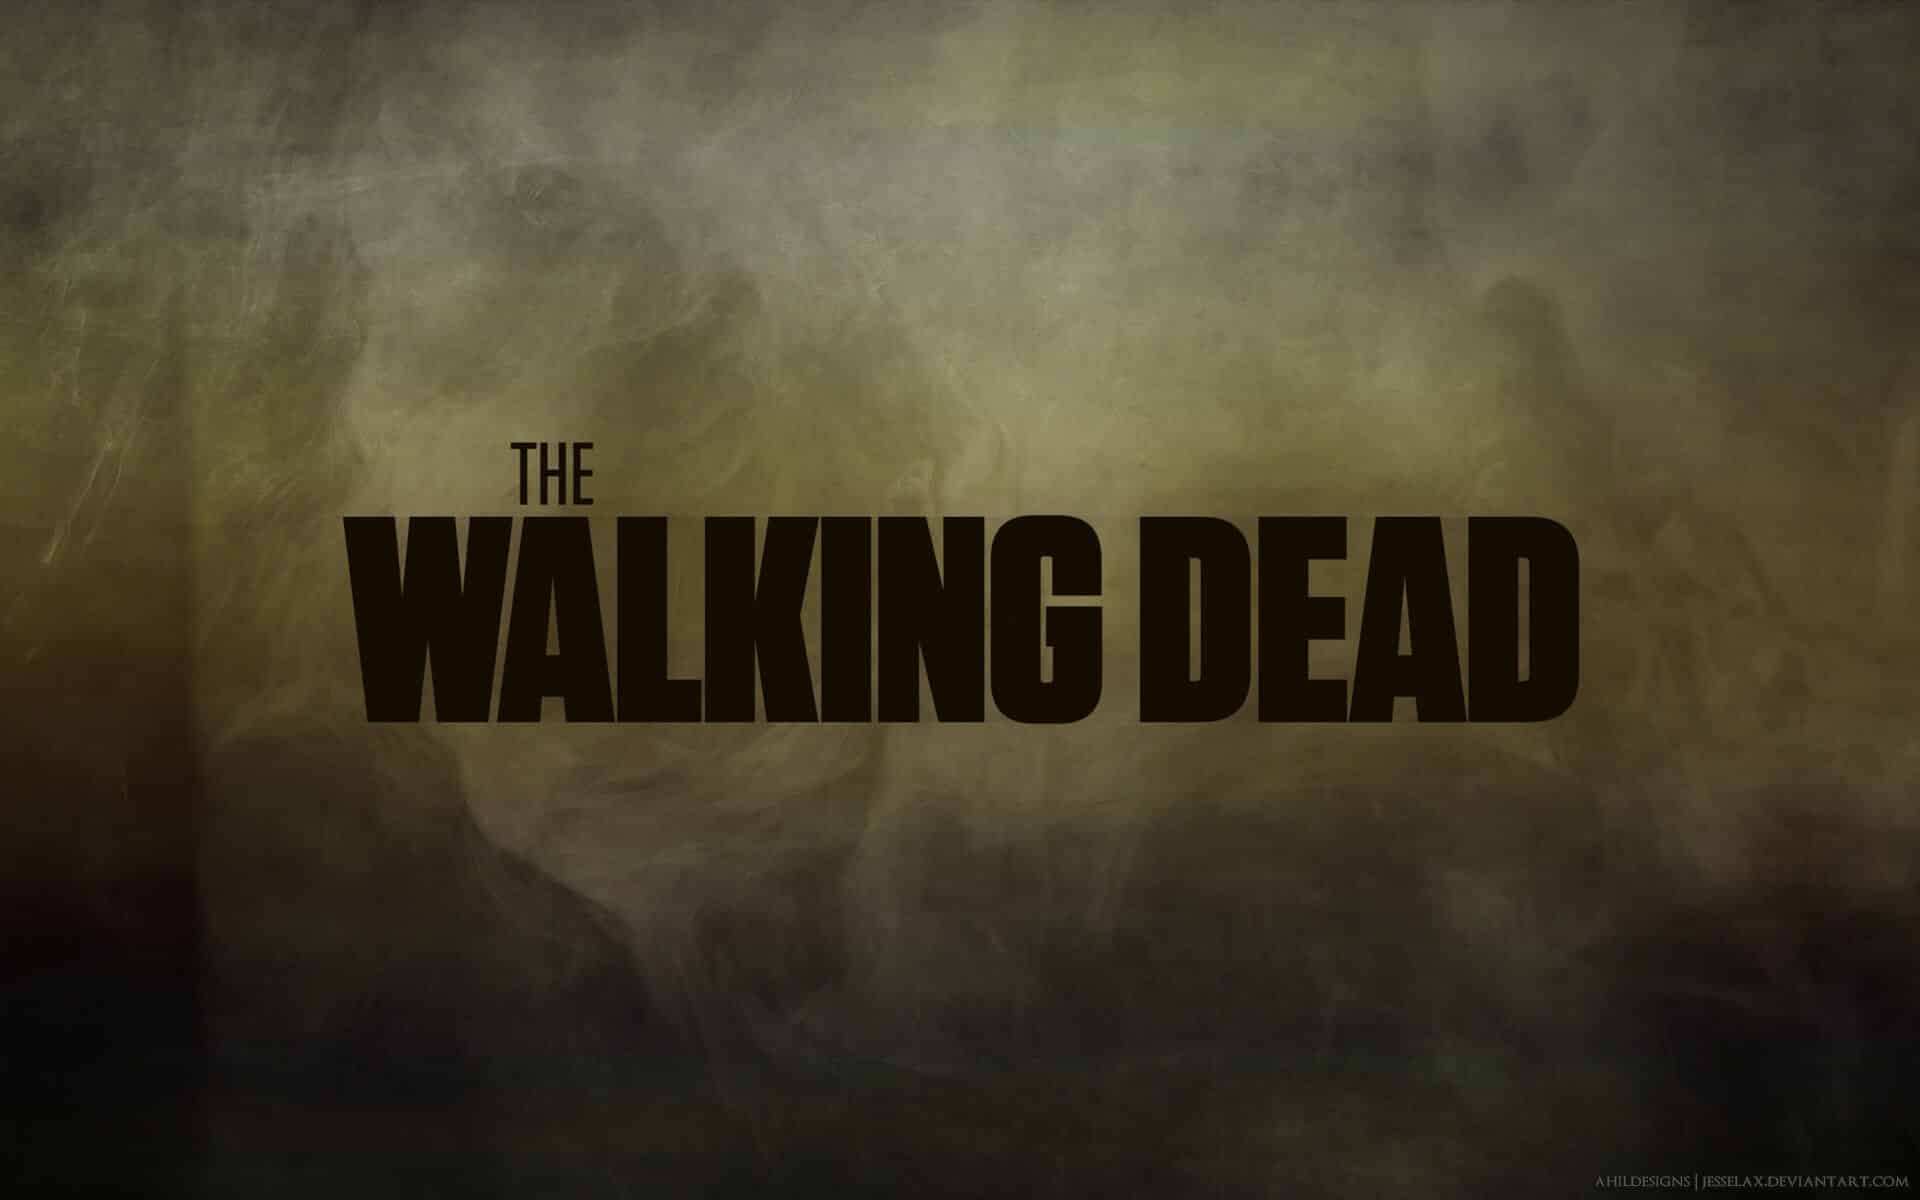 The Walking Dead 7x16 - The Walking Dead 8